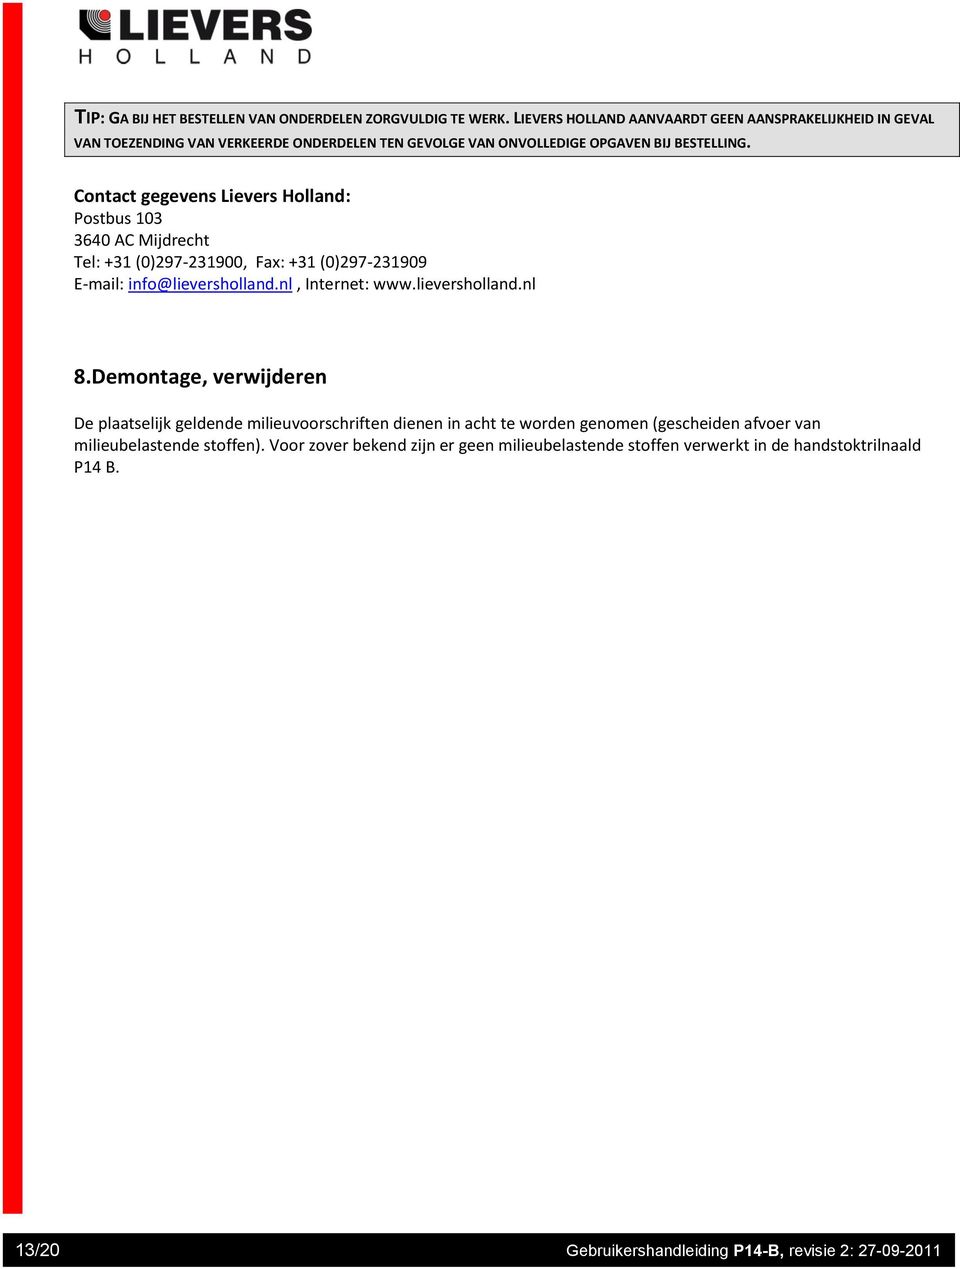 Contact gegevens Lievers Holland: Postbus 03 3640 AC Mijdrecht Tel: +3 (0)297-23900, Fax: +3 (0)297-23909 E-mail: info@lieversholland.nl, Internet: www.lieversholland.nl 8.